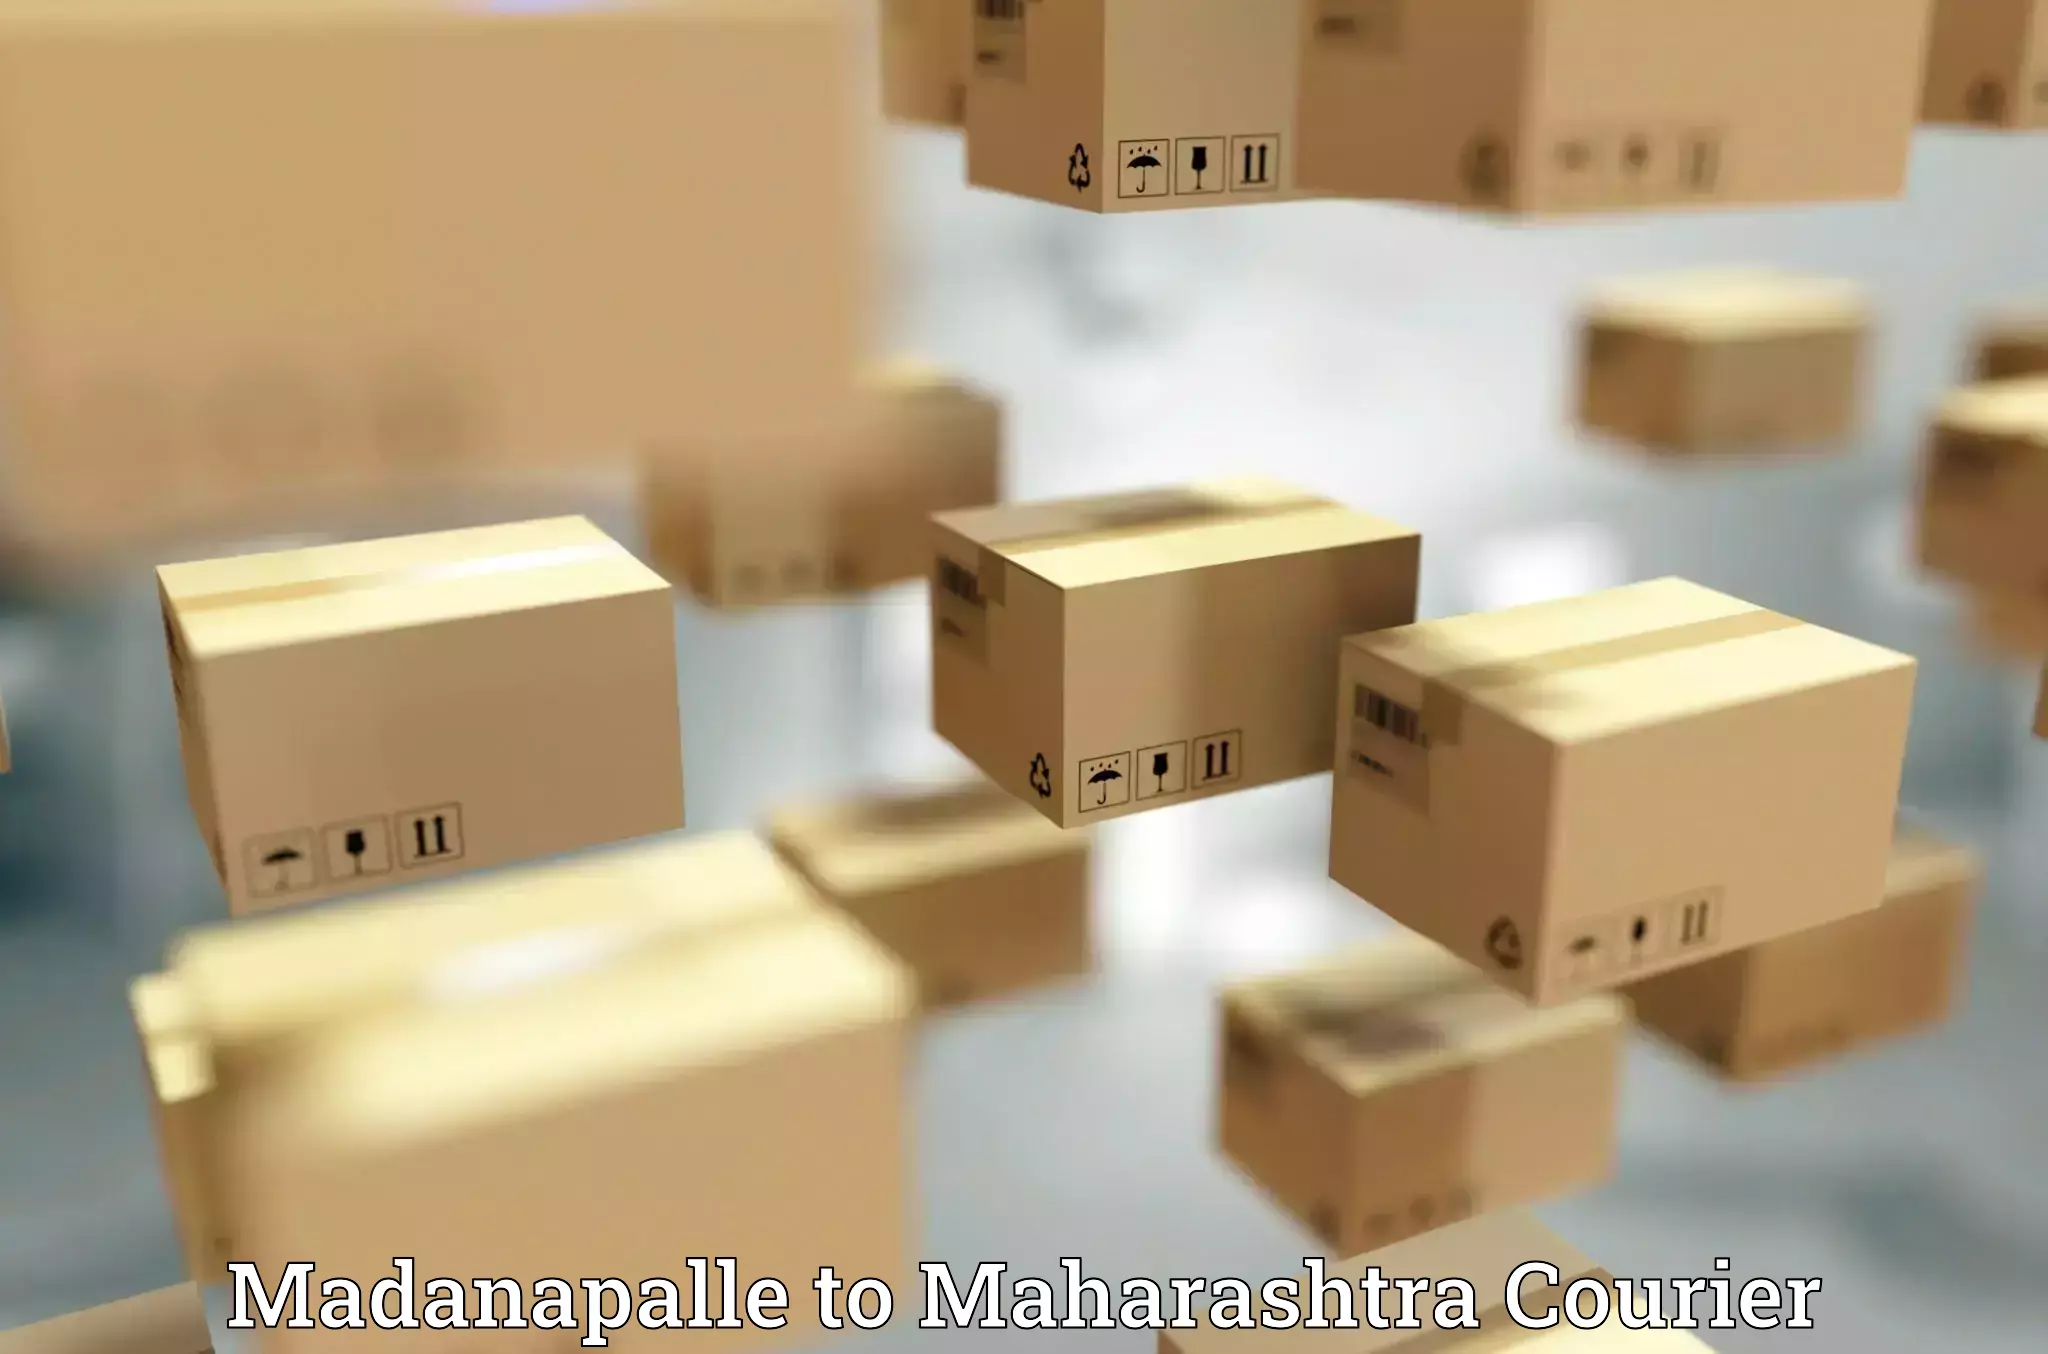 Courier services Madanapalle to Maharashtra